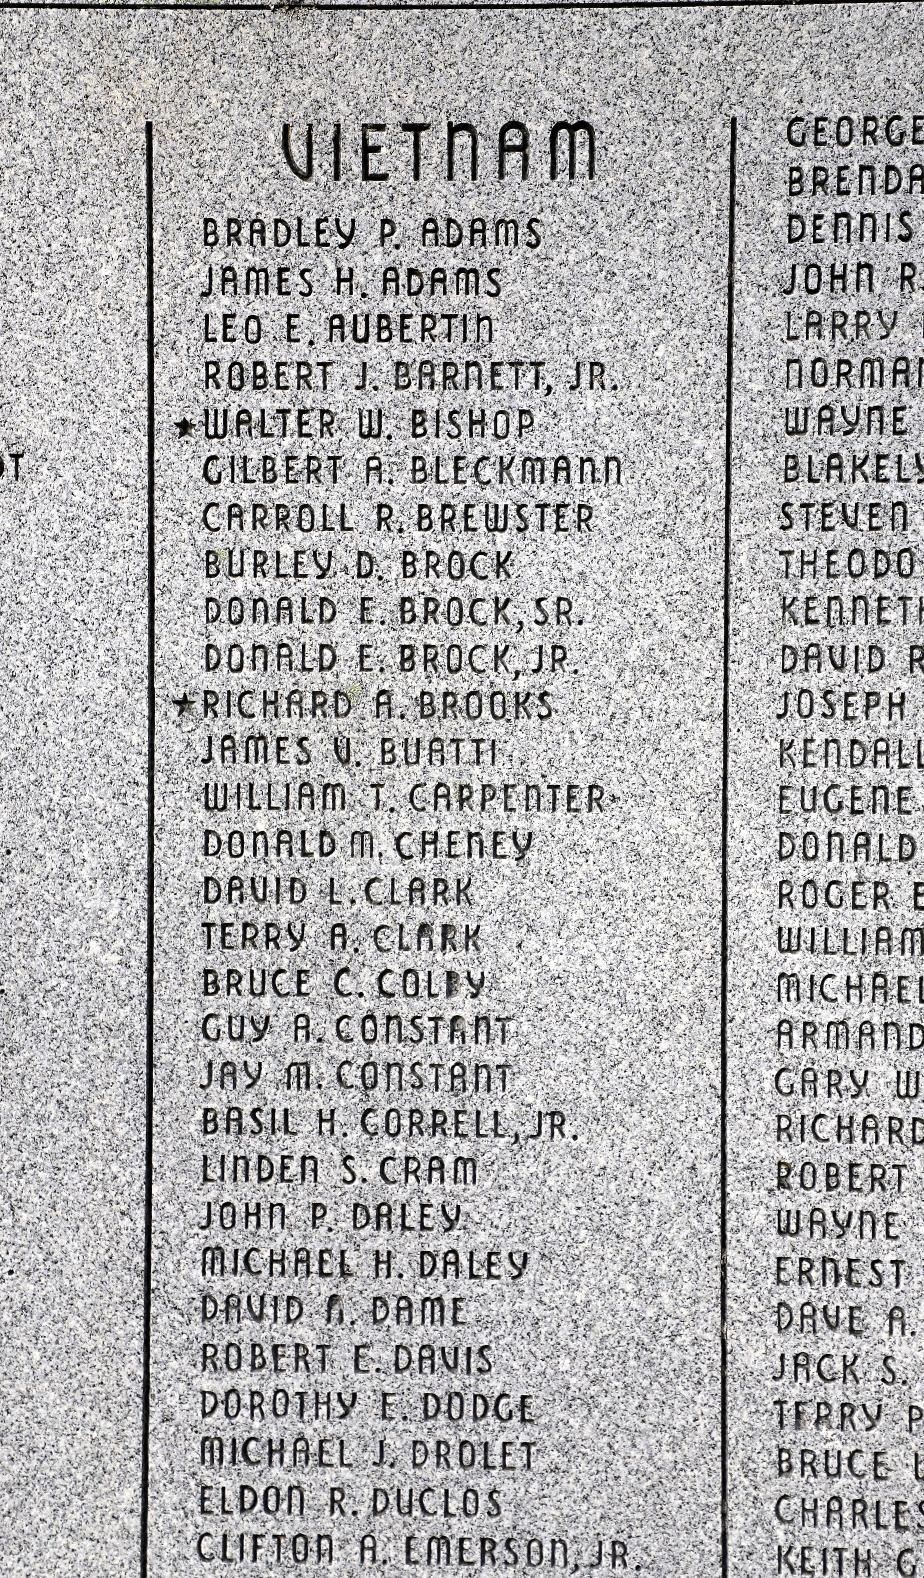 Pittsfield NH Veterans Memorial - Vietnam Honor Roll